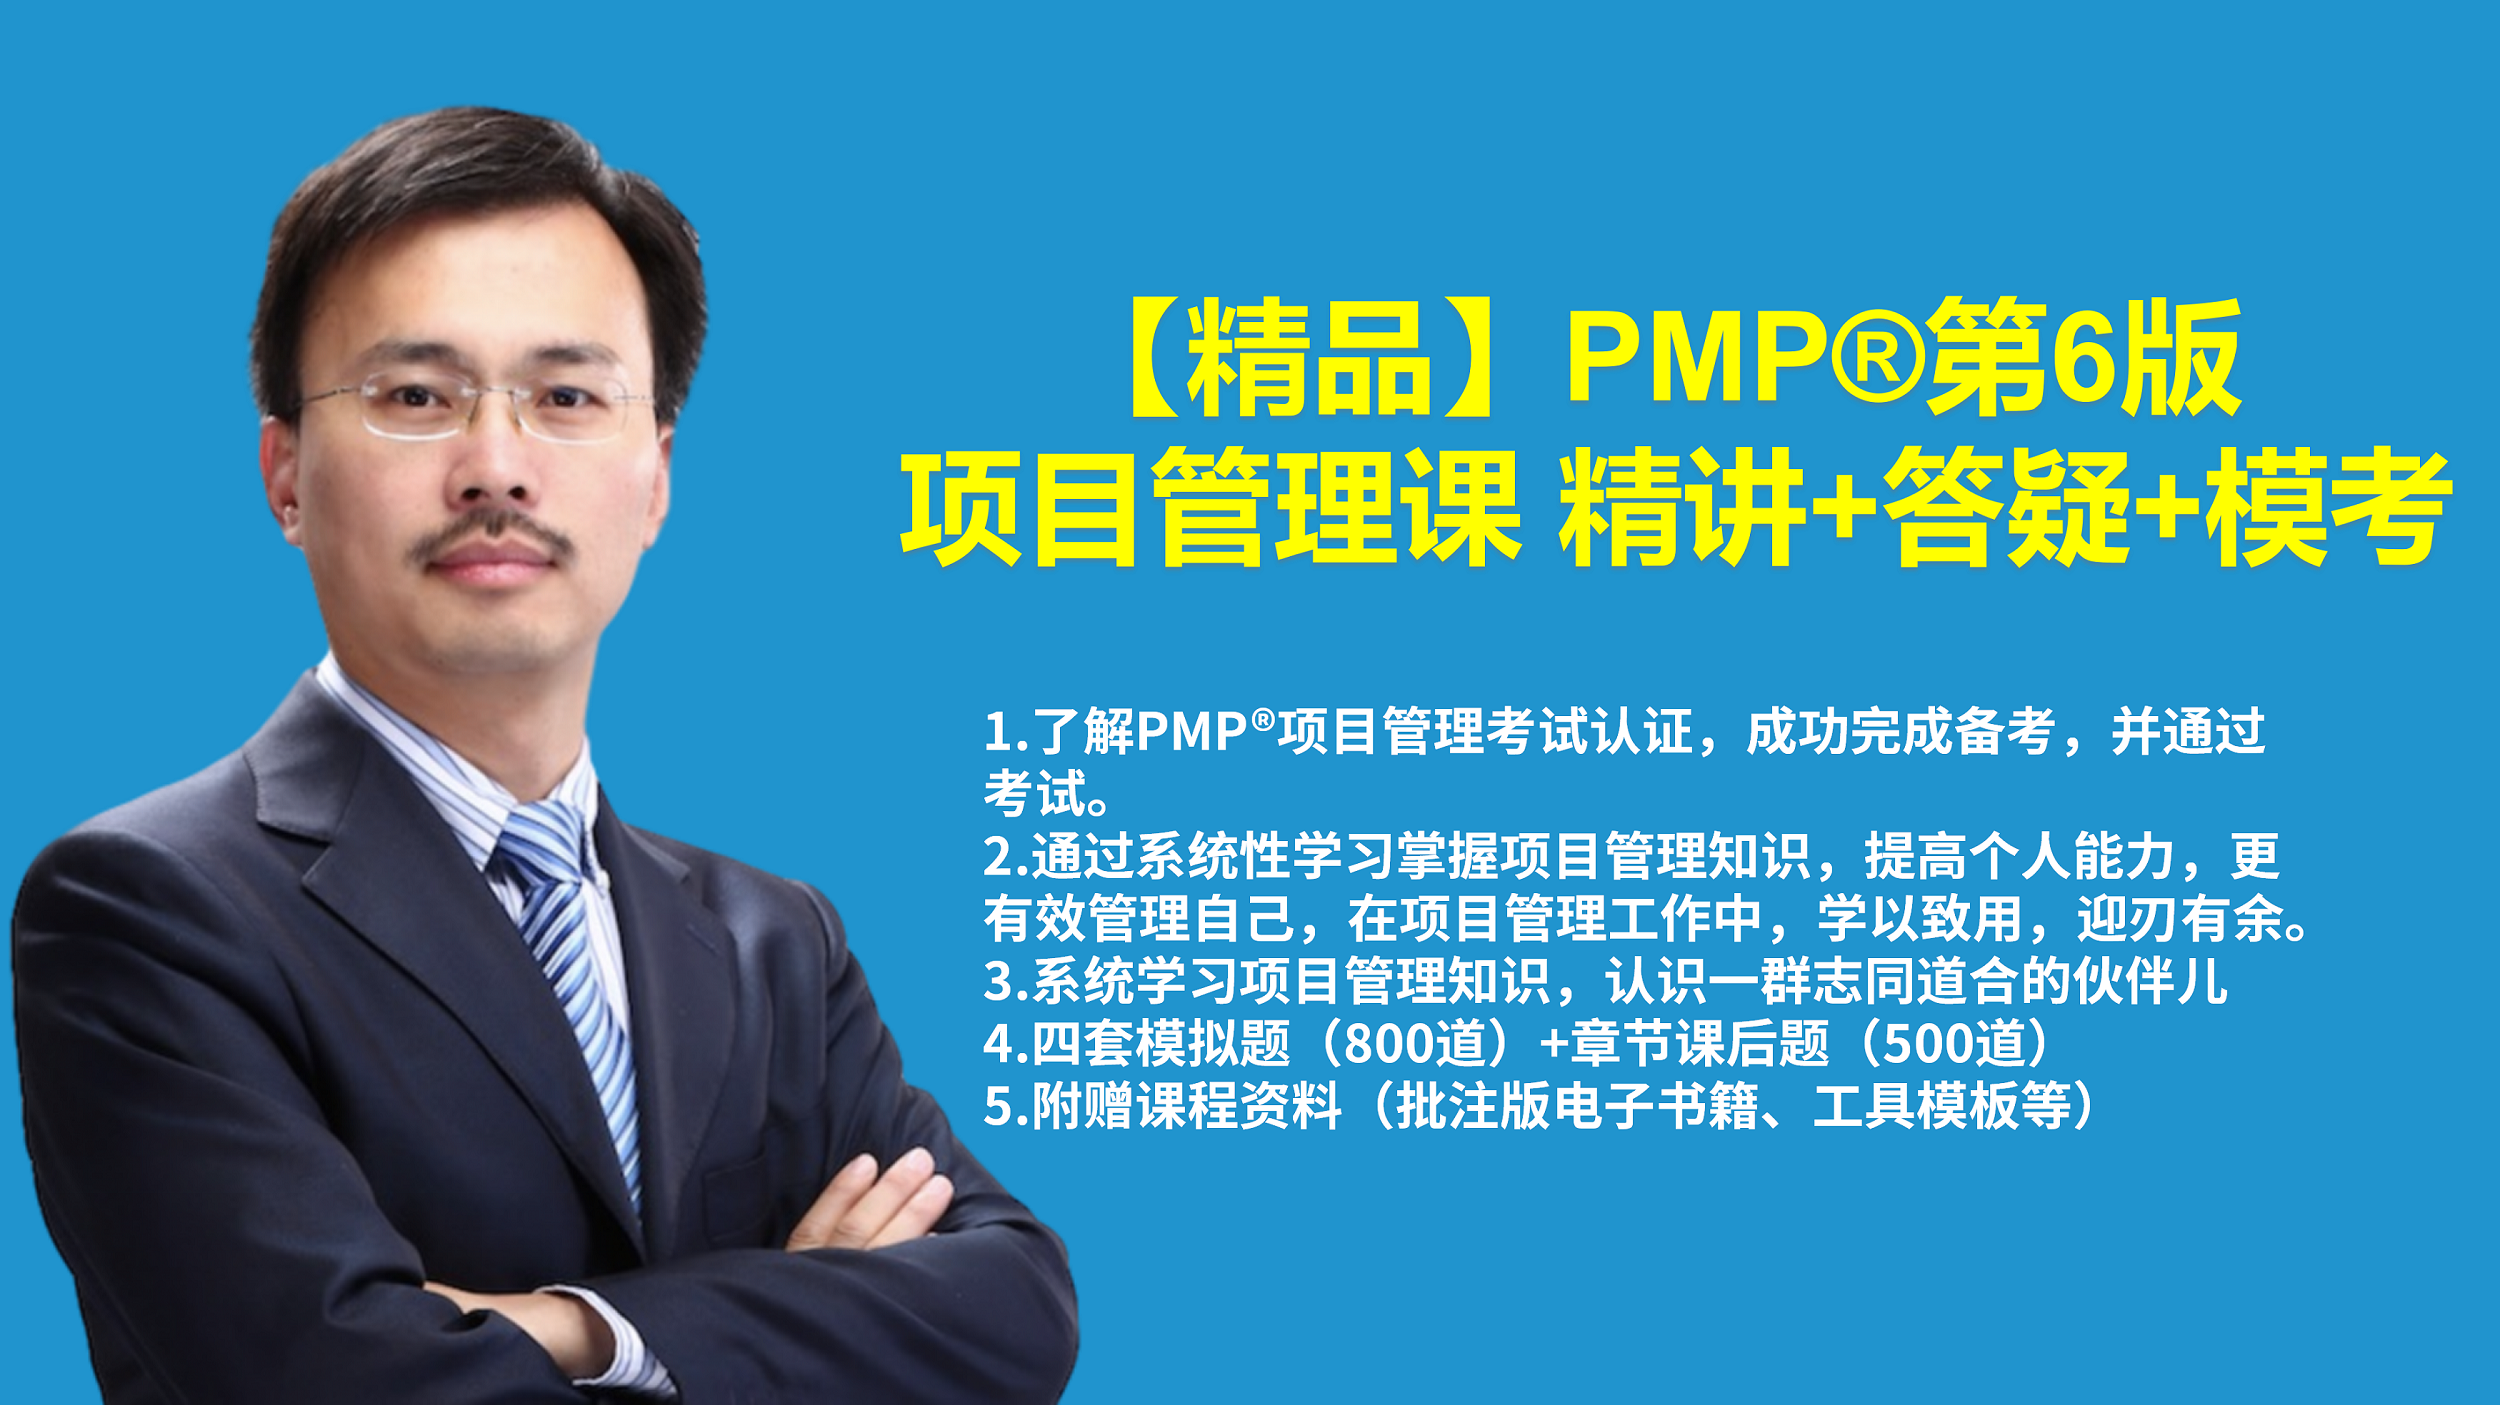 【精品】PMP®第6版项目管理课 精讲+答疑+模考